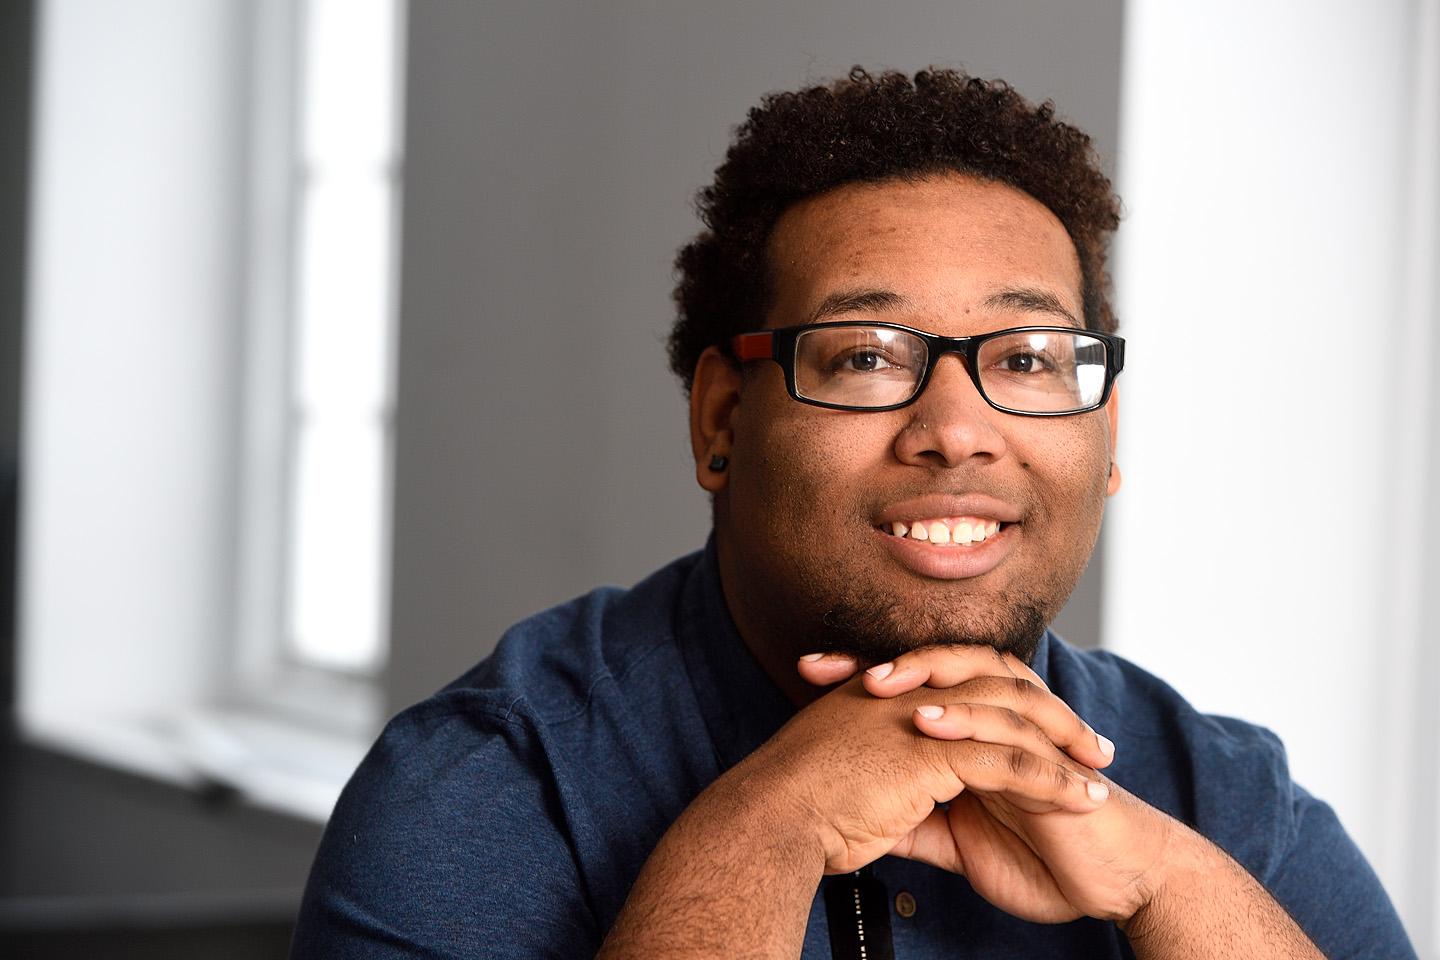 Malik Johnson helps first-gen college students find their way | Hub